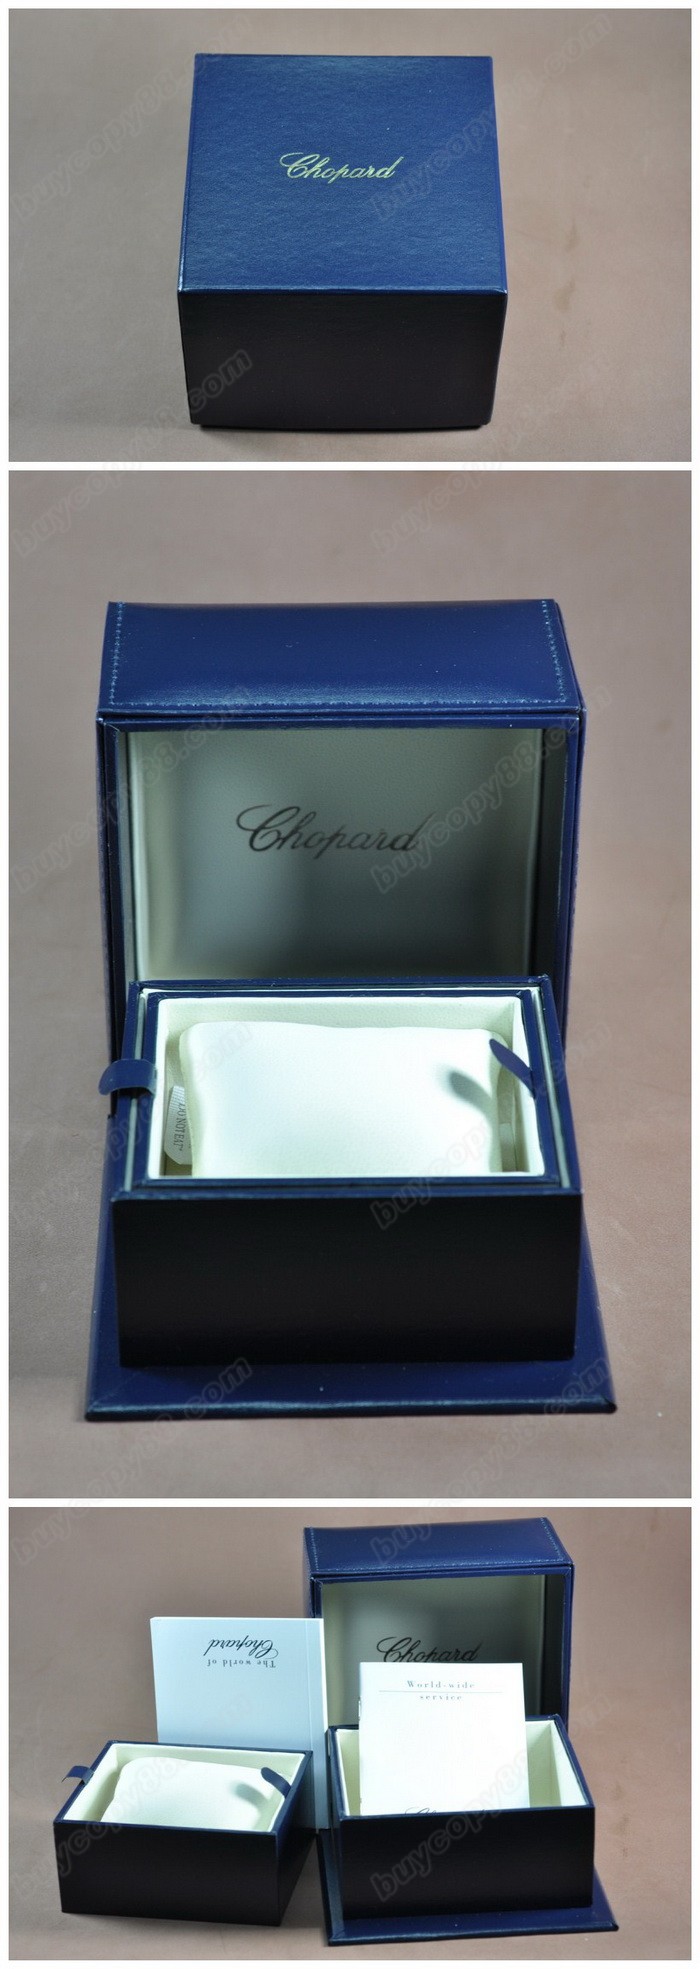 chopard原廠錶盒-送禮講究-收藏把玩首選0